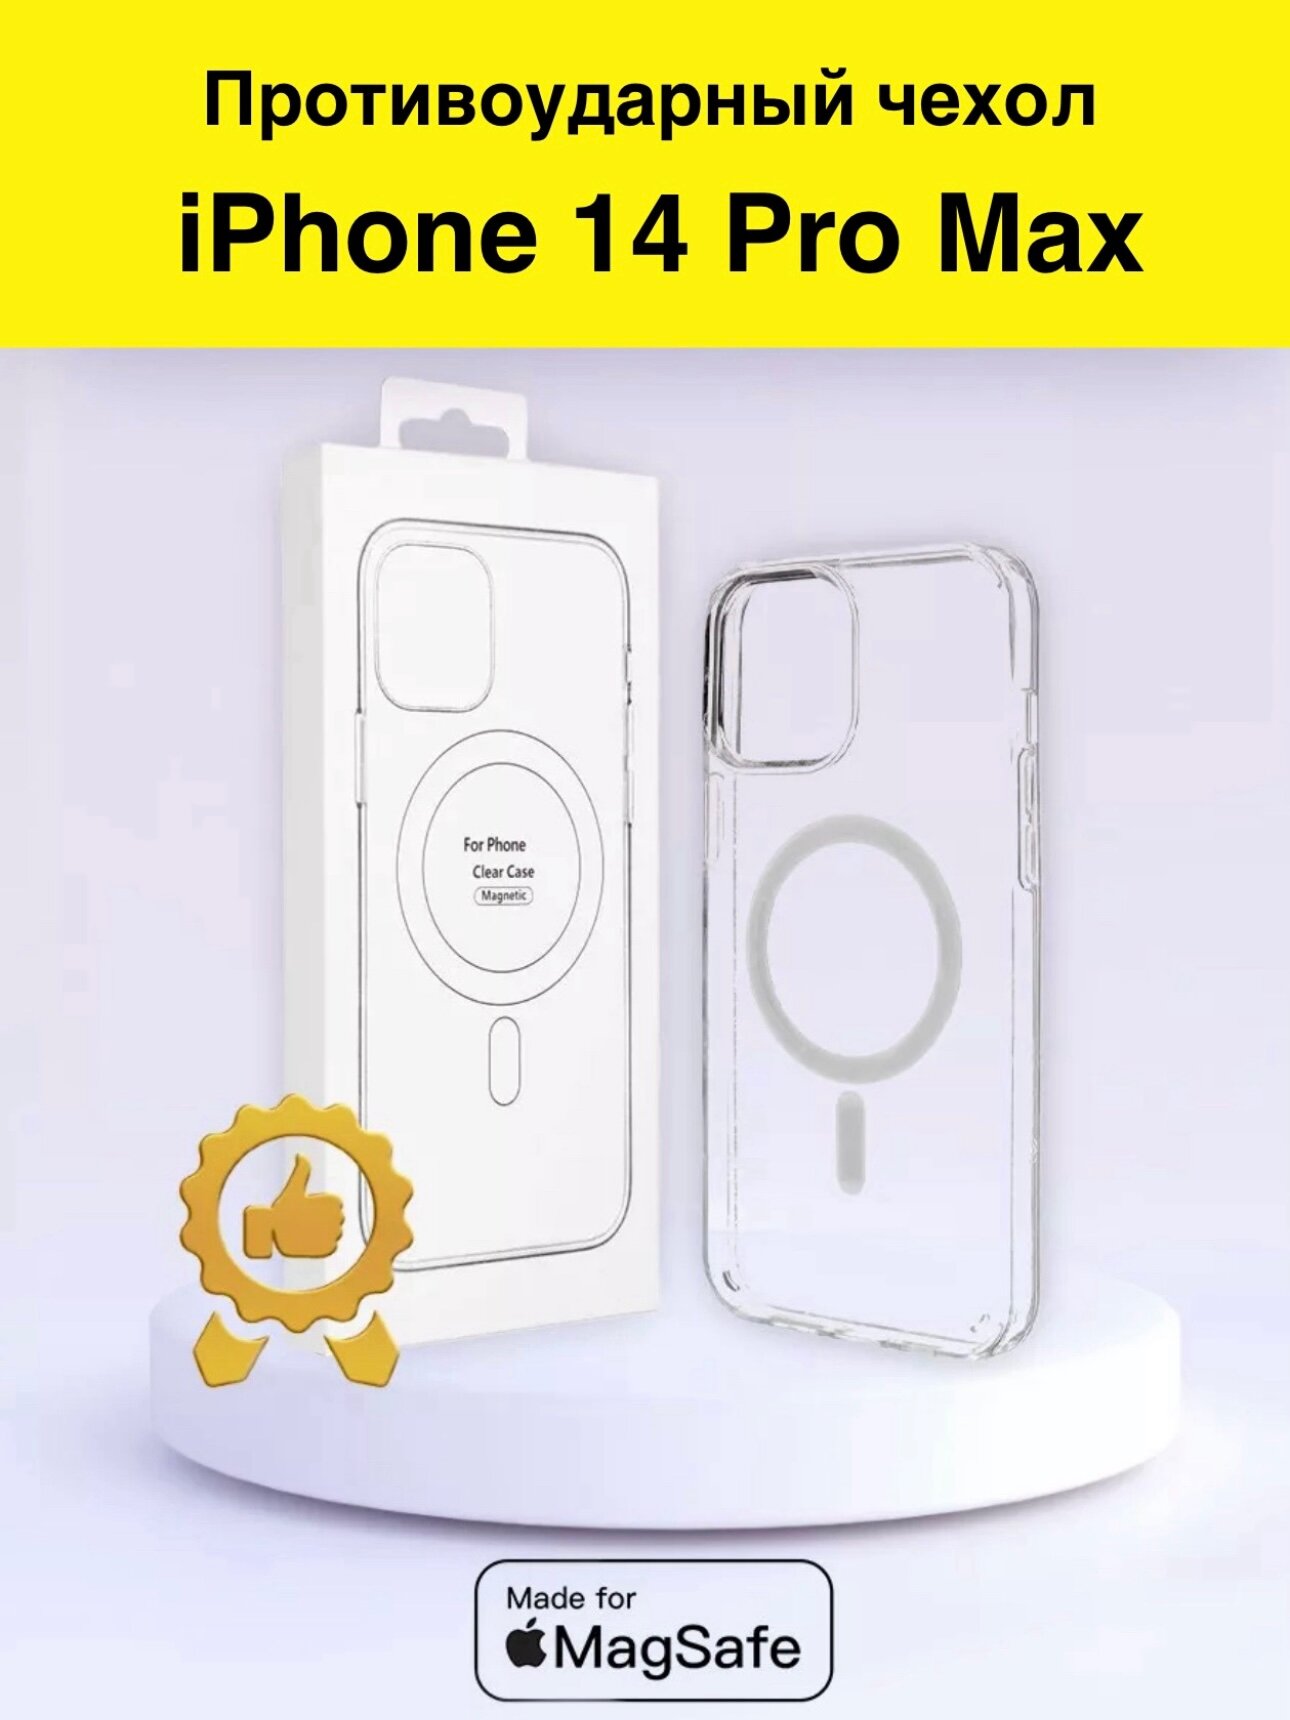 Защитный чехол для iPhone 14 Pro Max с MagSafe прозрачный / противоударный / силиконовый / с поддержкой беспроводной зарядки на айфон 14 про макс